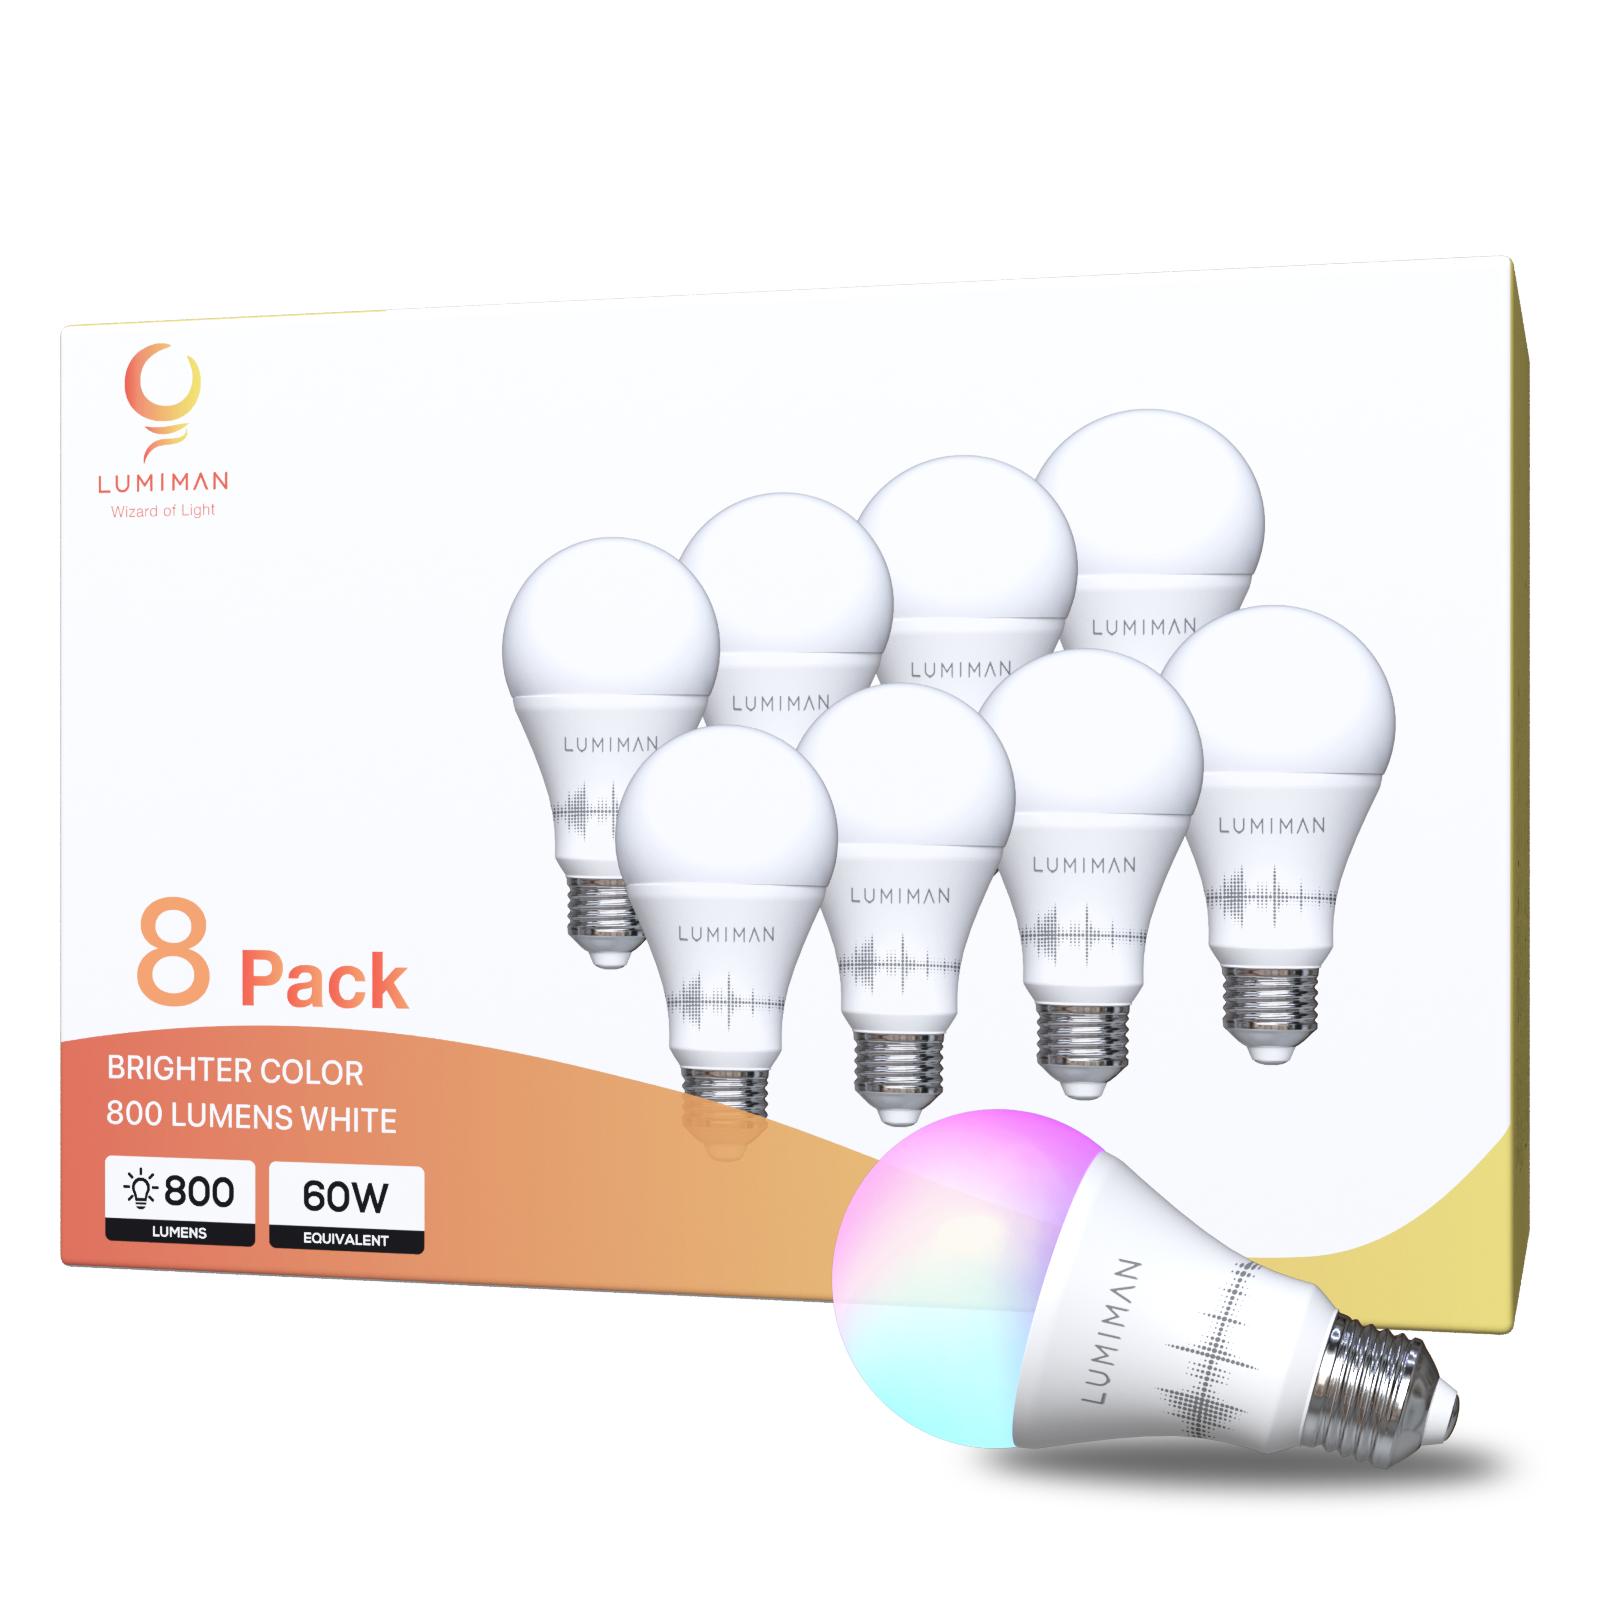 LUMIMAN Bombilla inteligente de candelabro E12, bombillas LED inteligentes,  WiFi RGB, cambio de color, luces inteligentes de 400 lm, funciona con